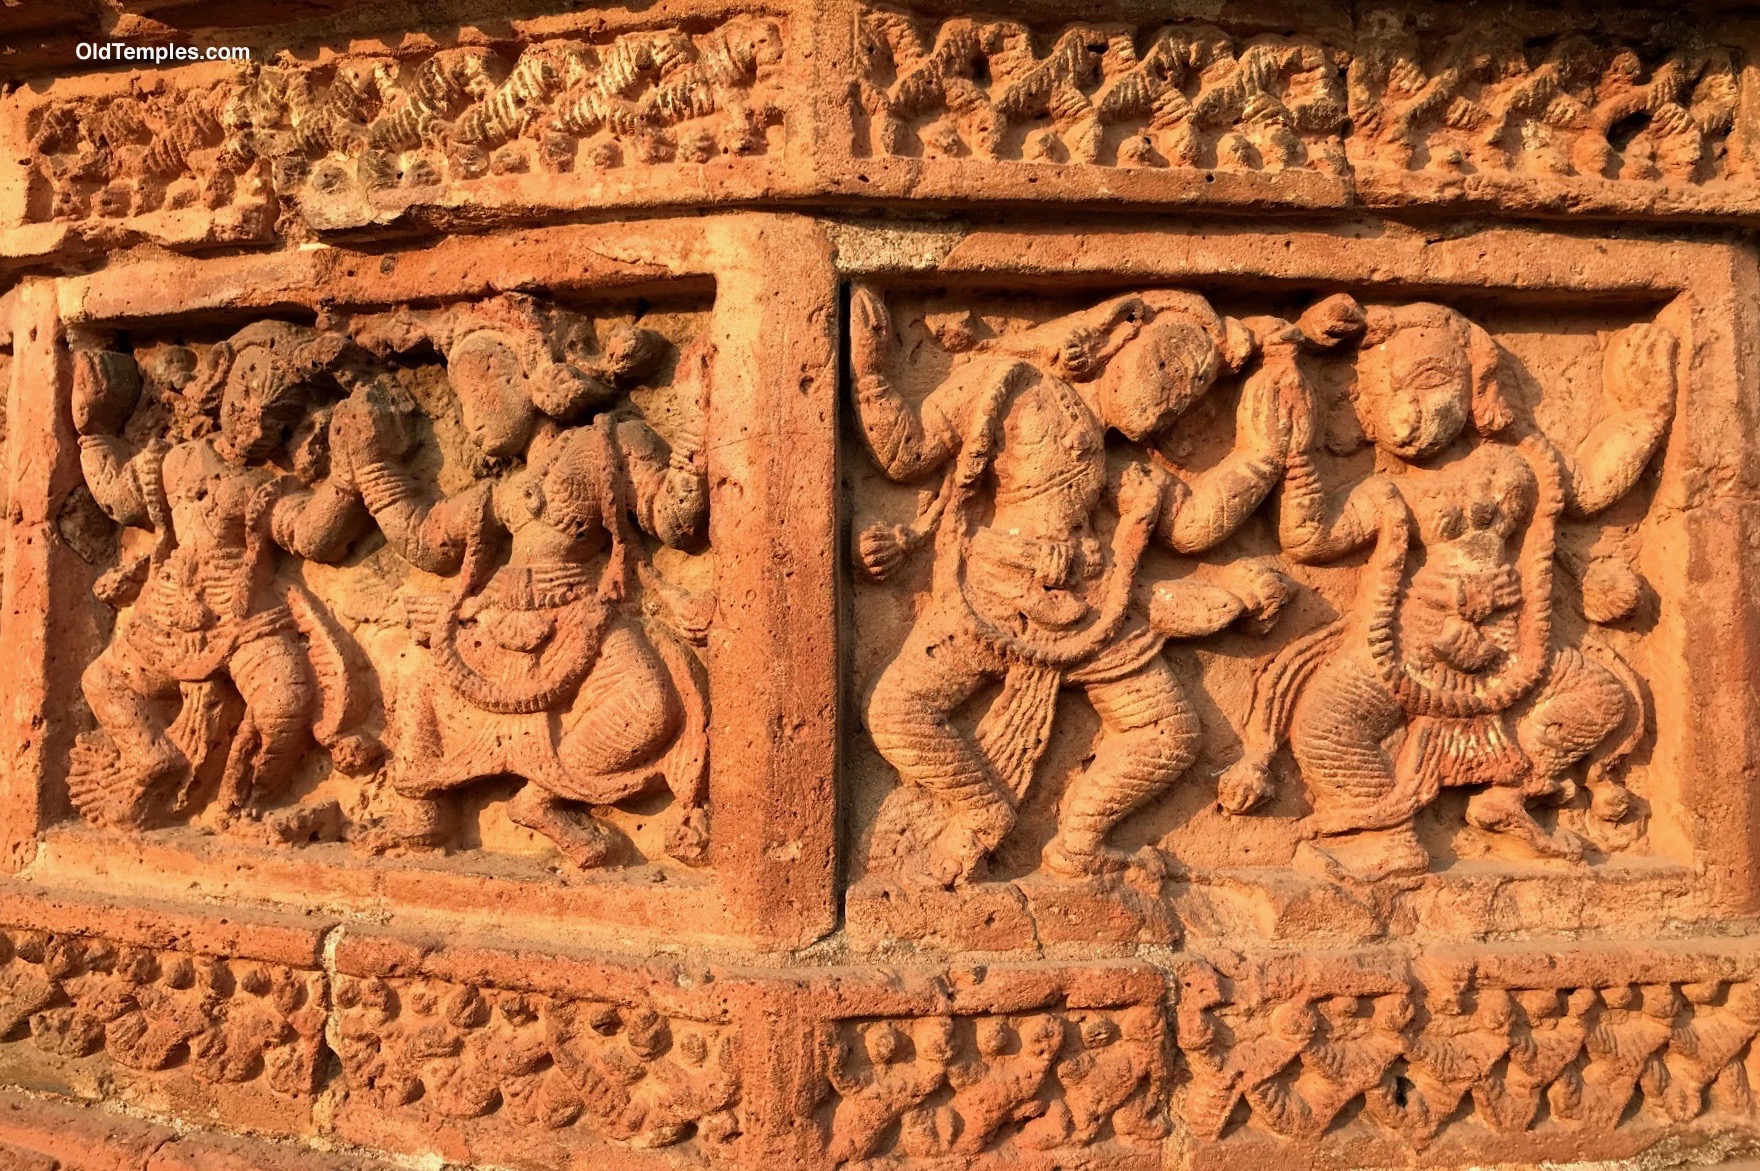 The Leela, Madan Mohan Temple